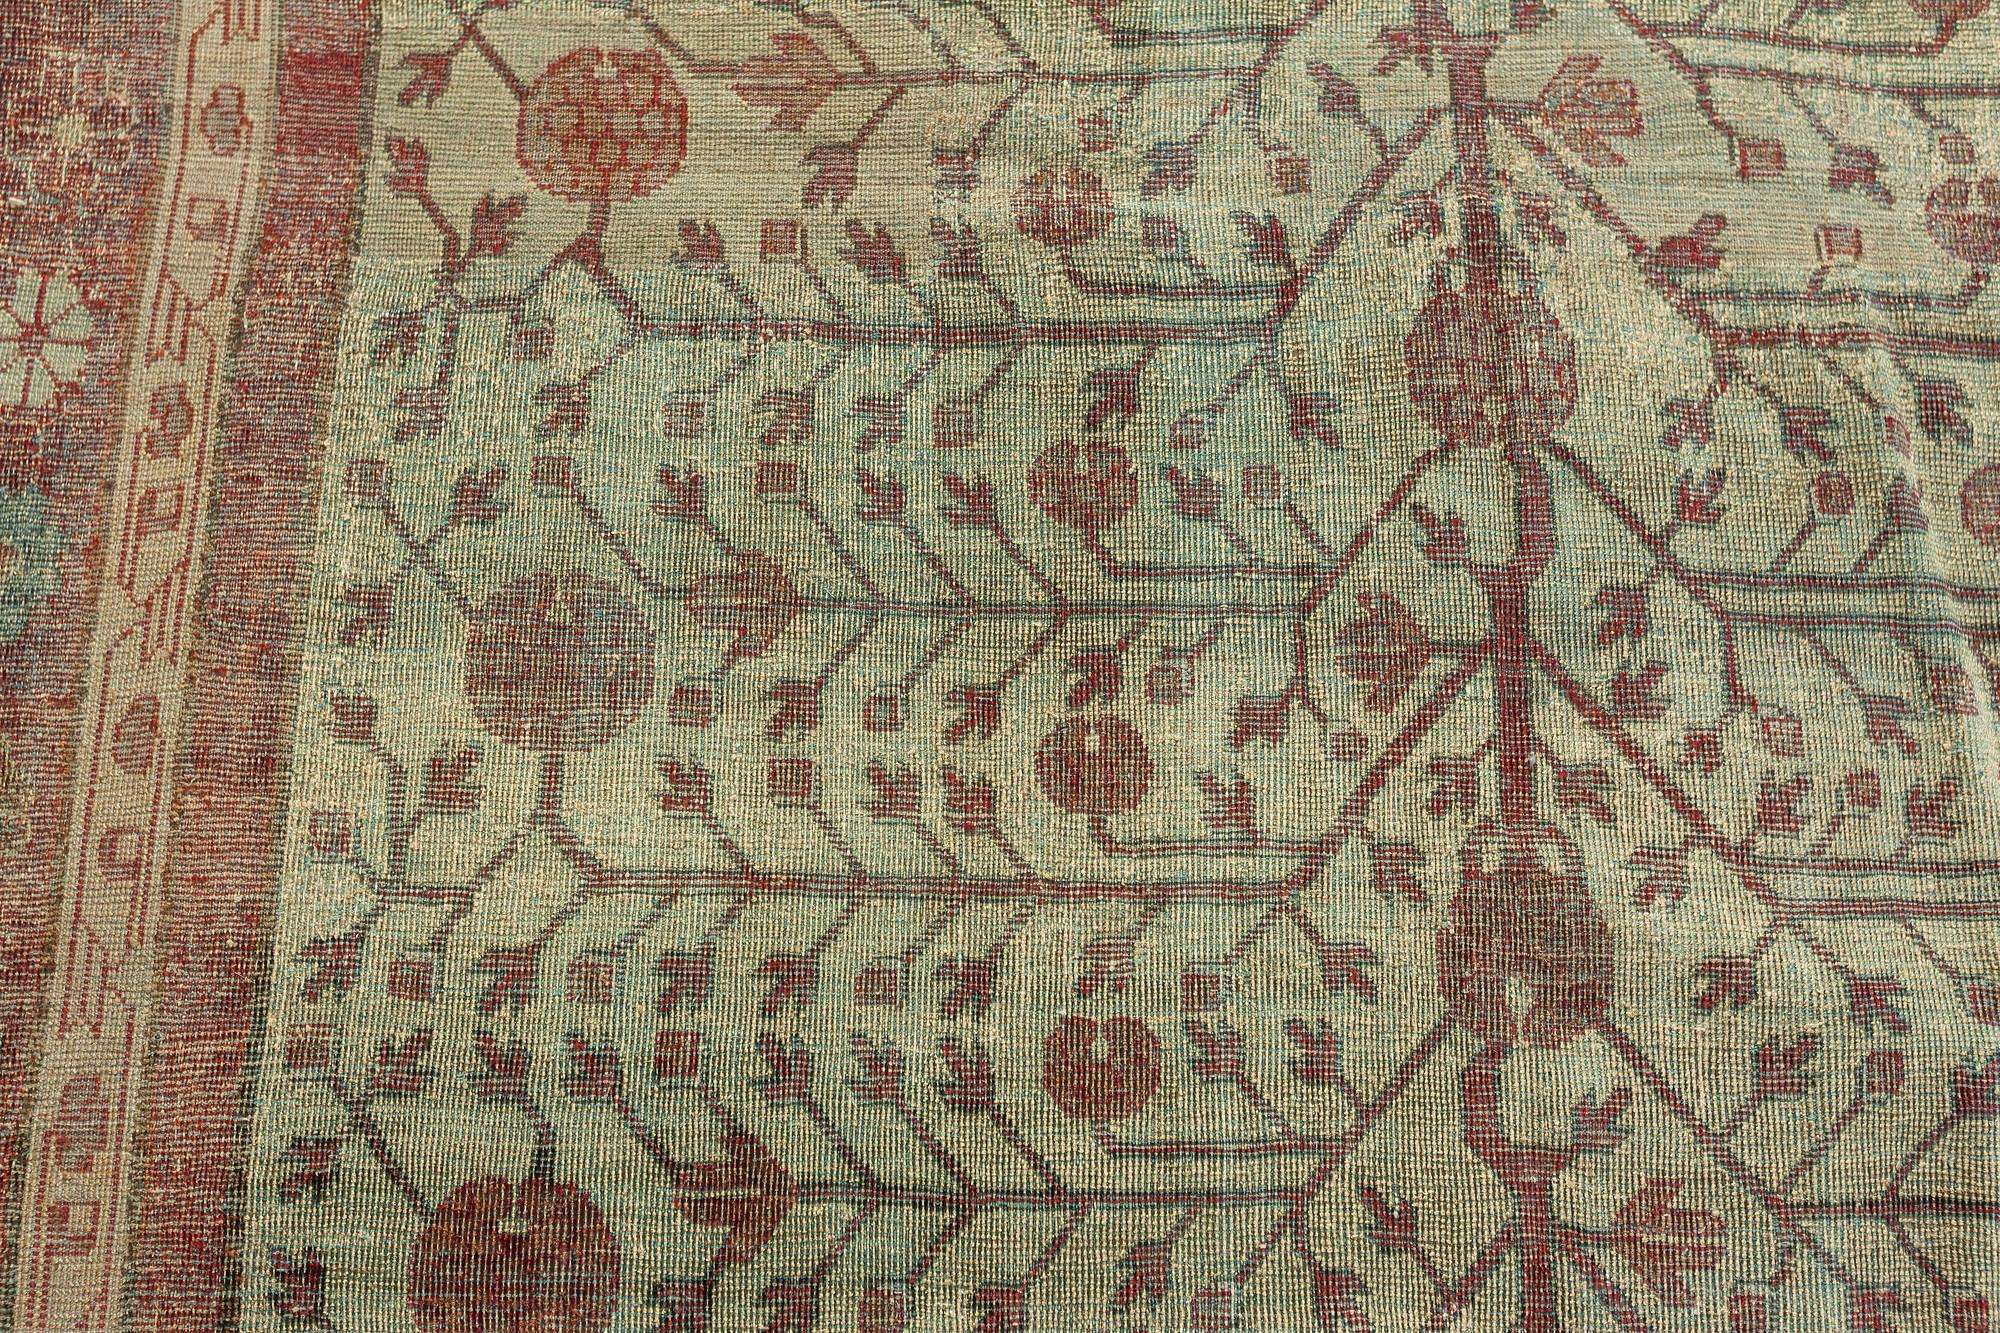 Silk Yarkand Samarkand Rug
Size: 10'10